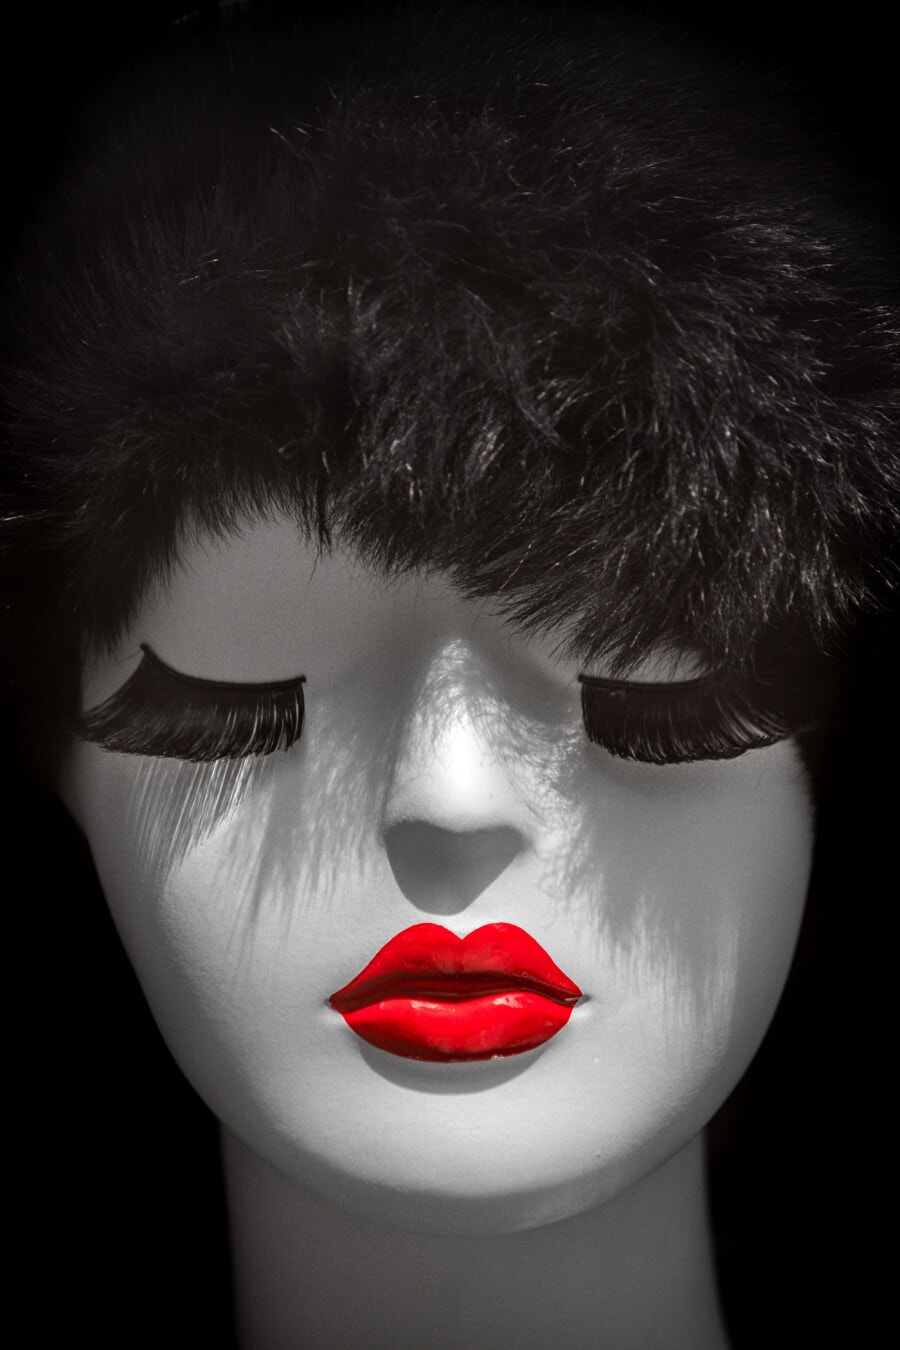 plástico, muñeca, cabeza, contacto directo, blanco y negro, lápiz labial, rojo oscuro, cara, cabello, modelo